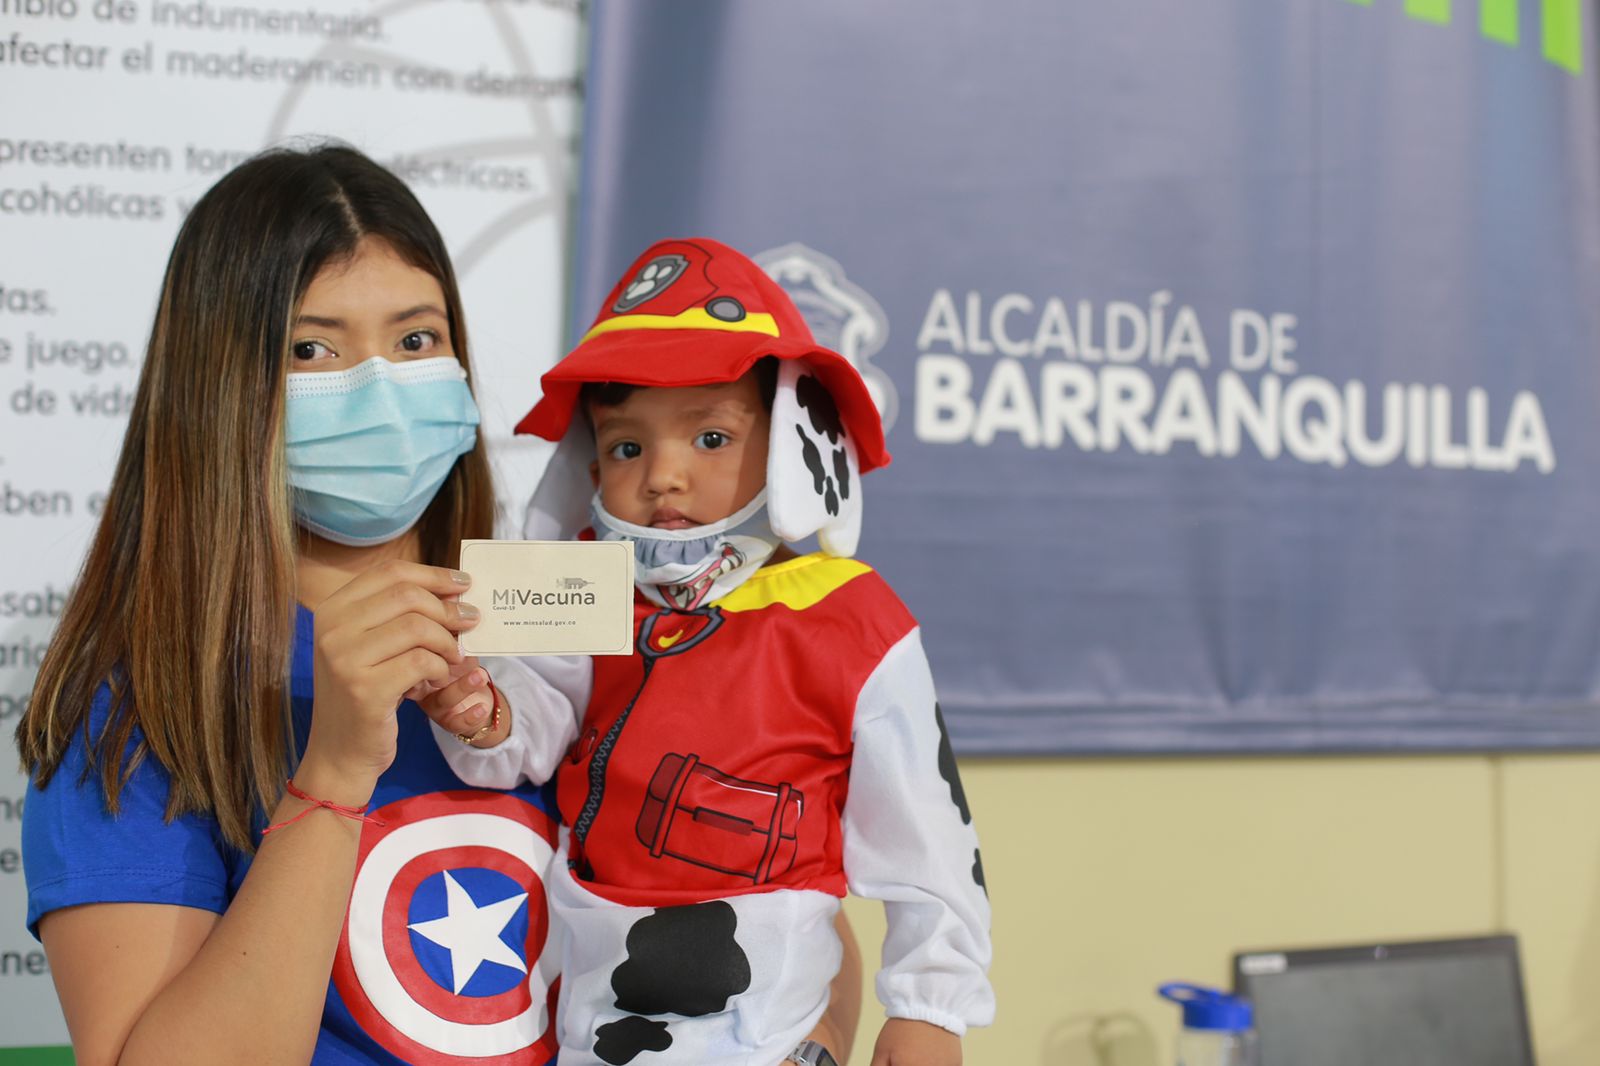 La alcaldía de Barranquilla y las EPS hacen alianza para fortalecer las coberturas de vacunación contra sarampión y rubéola